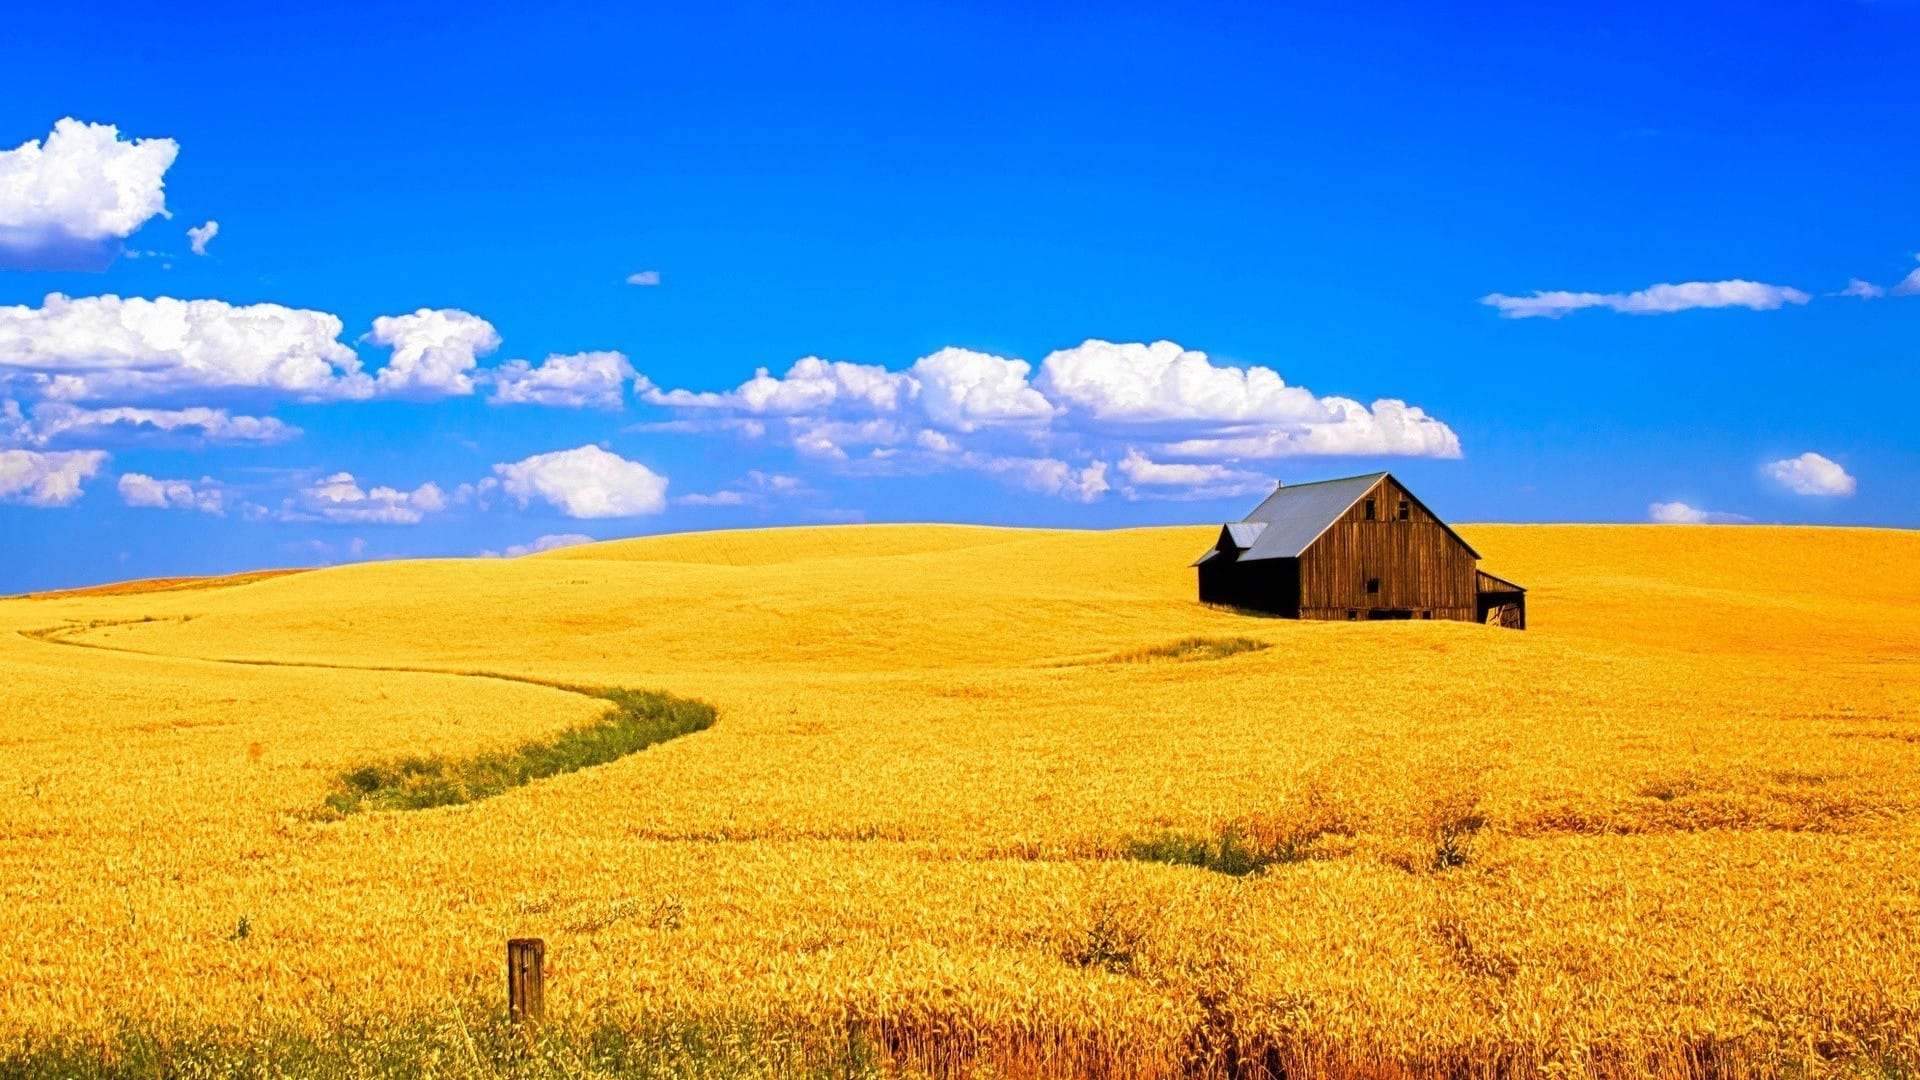 盛夏季节晴朗天气下的金黄色麦田风景图片壁纸